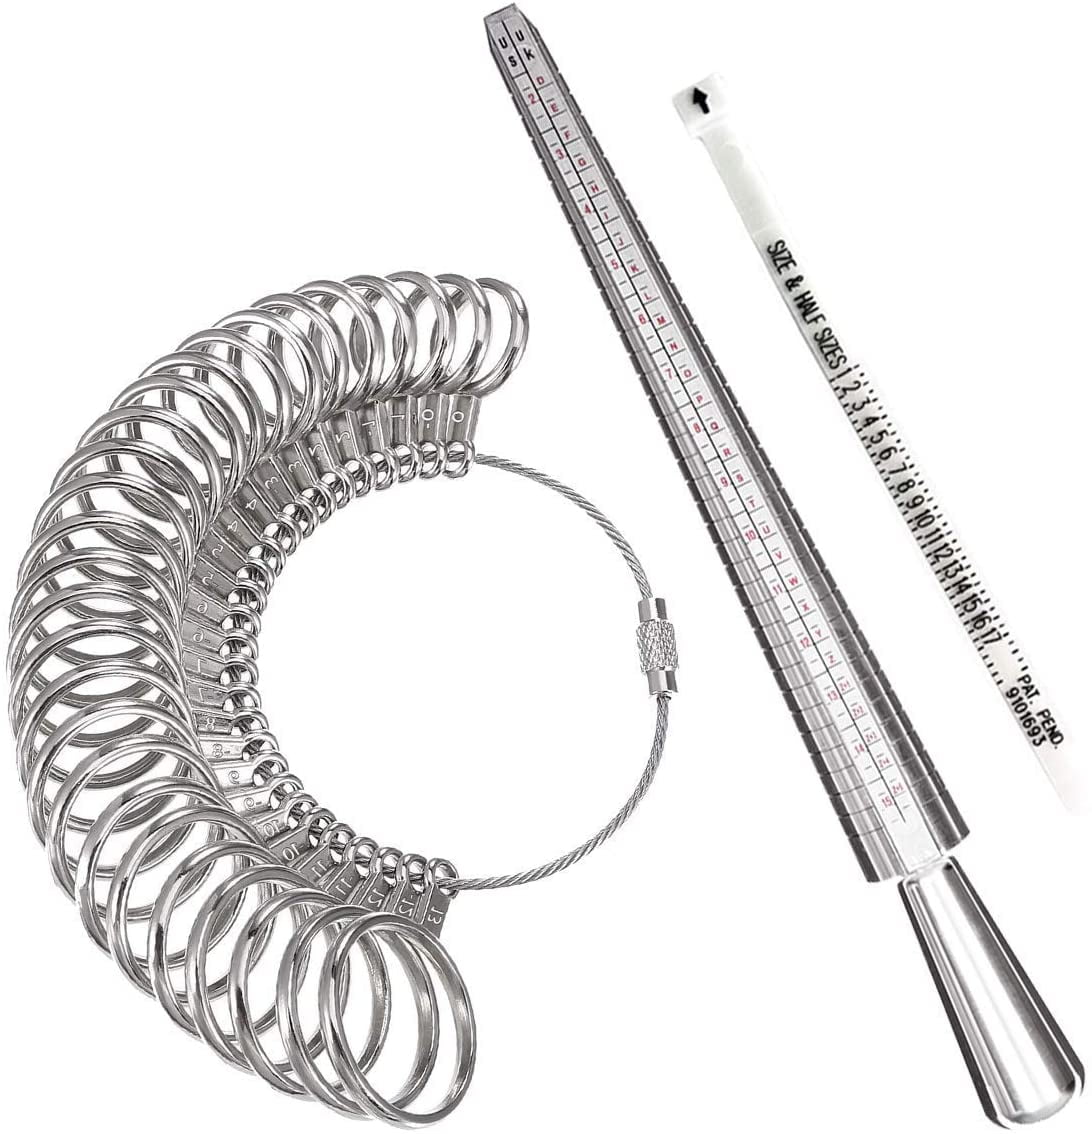 Meowoo Ring Sizer Measuring Tool Aluminum Ring Mandrel and Finger Gauges (Metal Ring Sizer Tool Set)